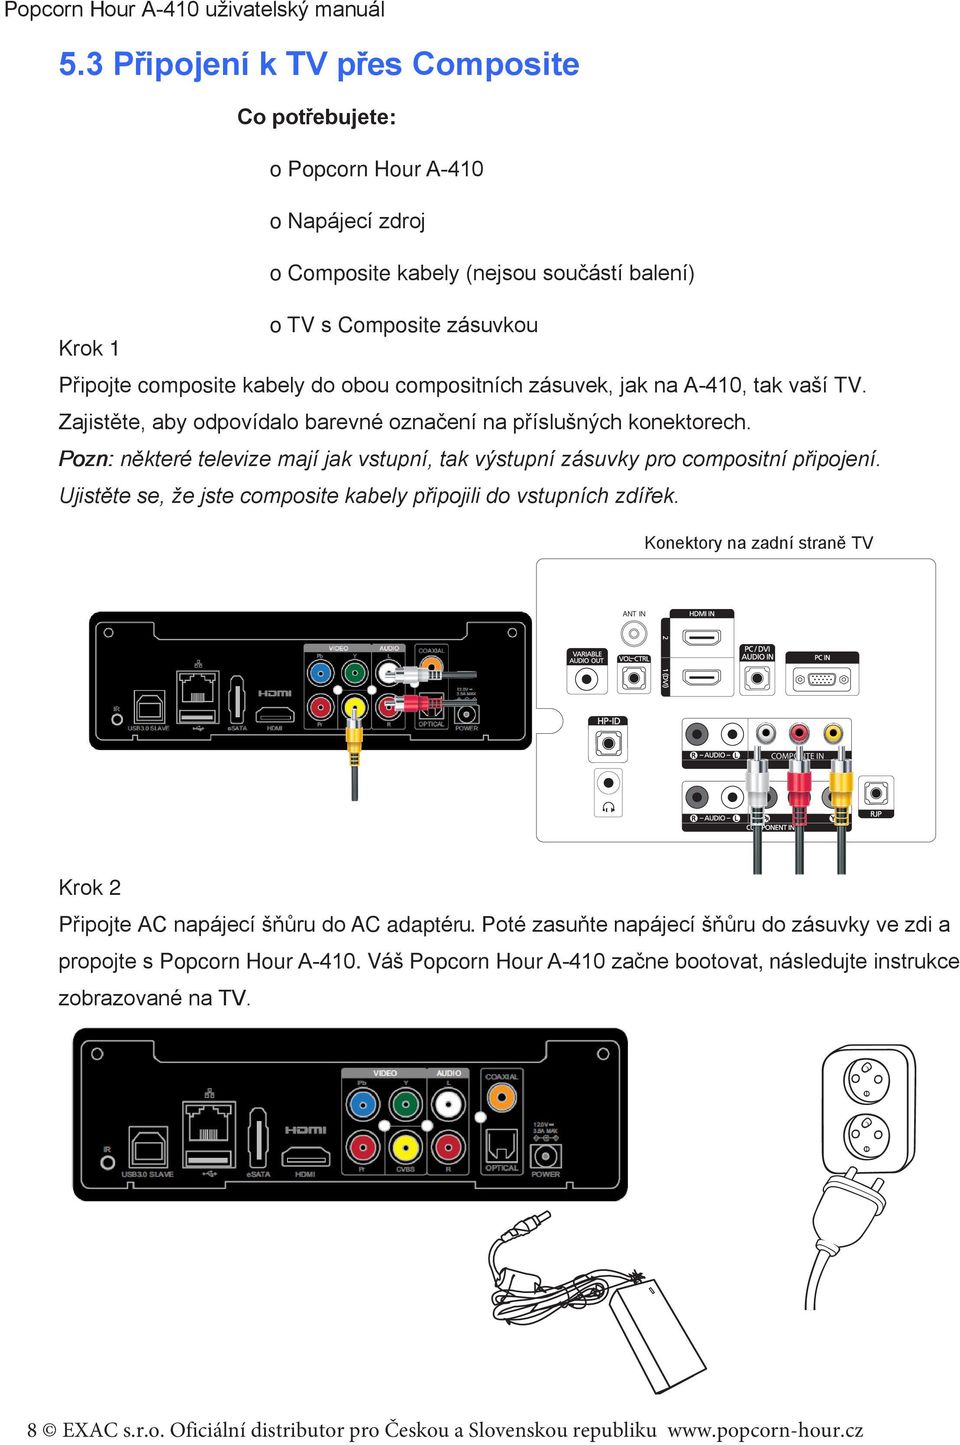 compositních zásuvek, jak na A-410, tak vaší TV. Zajistěte, aby odpovídalo barevné označení na příslušných konektorech.